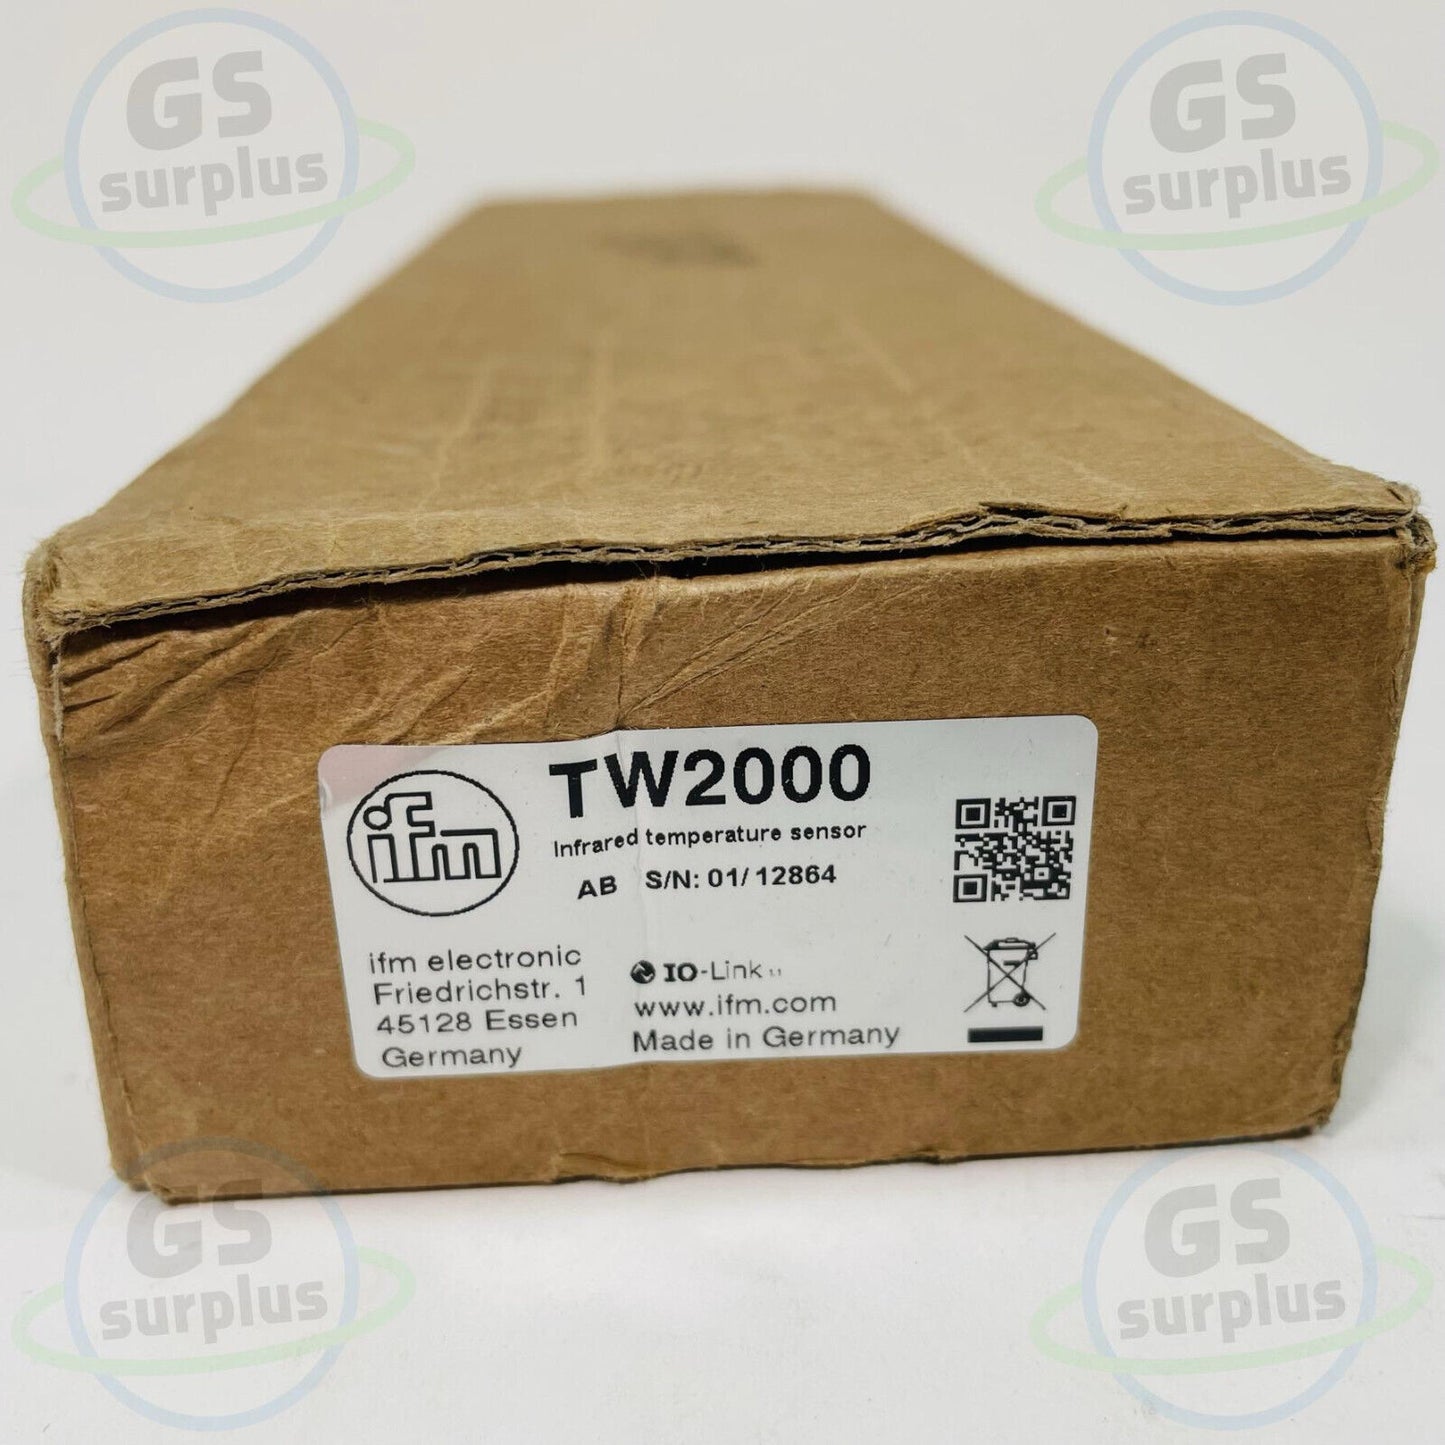 New IFM TW2000 Infrared Temperature Sensor